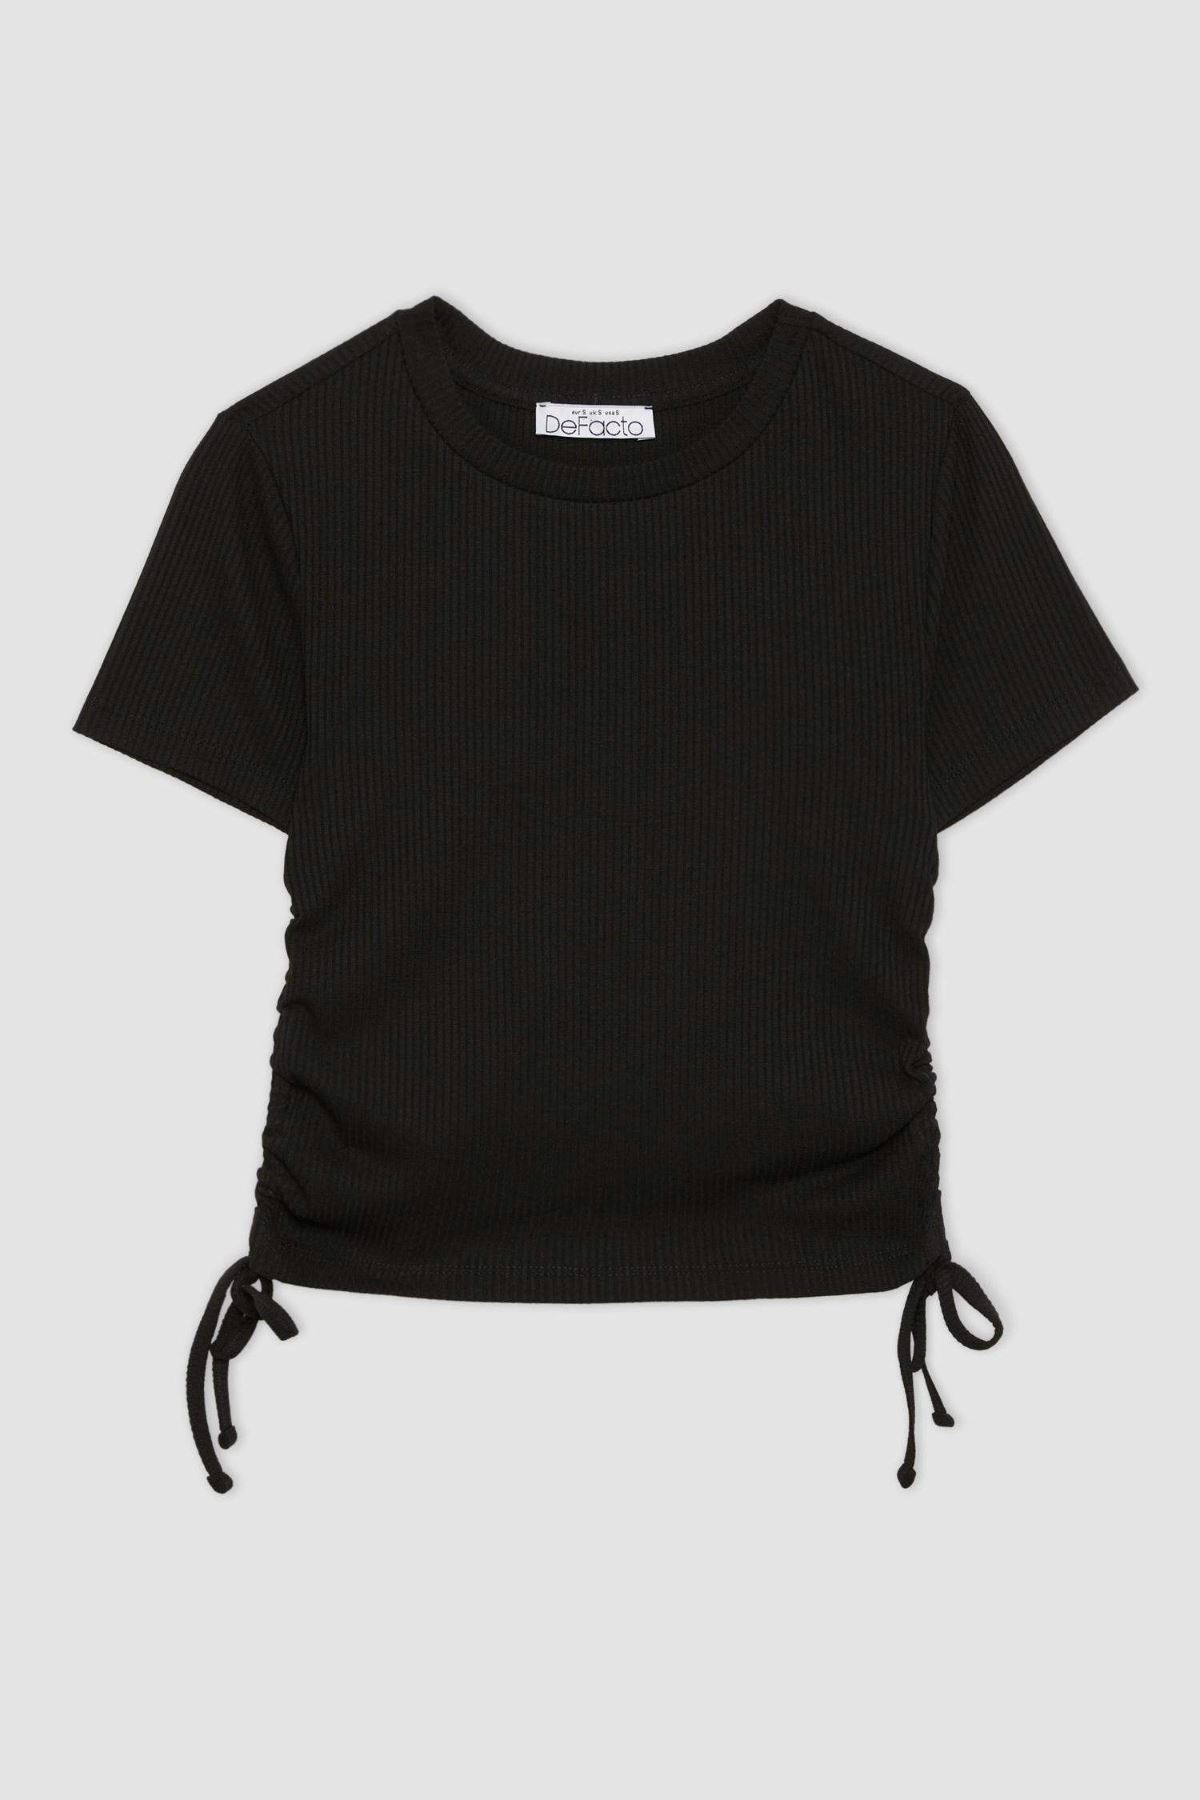 Defacto Kadın Siyah Tişört - T9632AZ/BK81